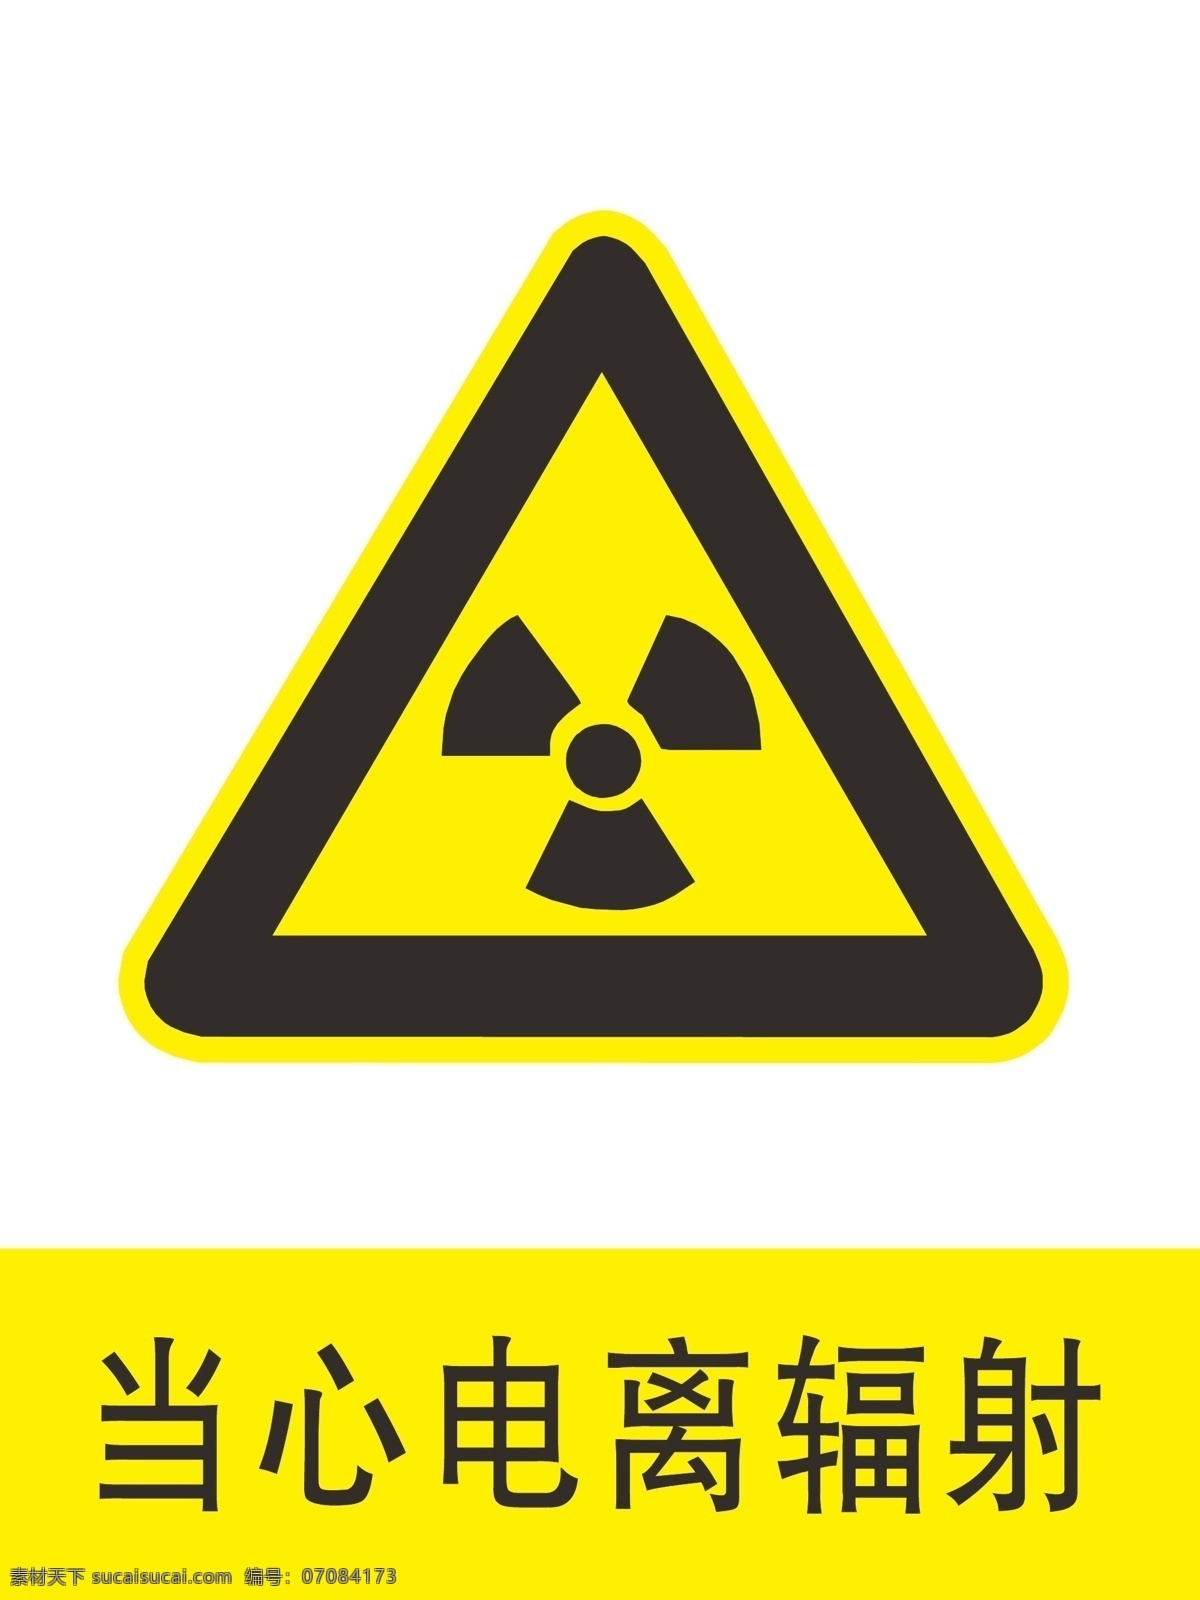 当心电离辐射 电离辐射 辐射警示牌 辐射 电离